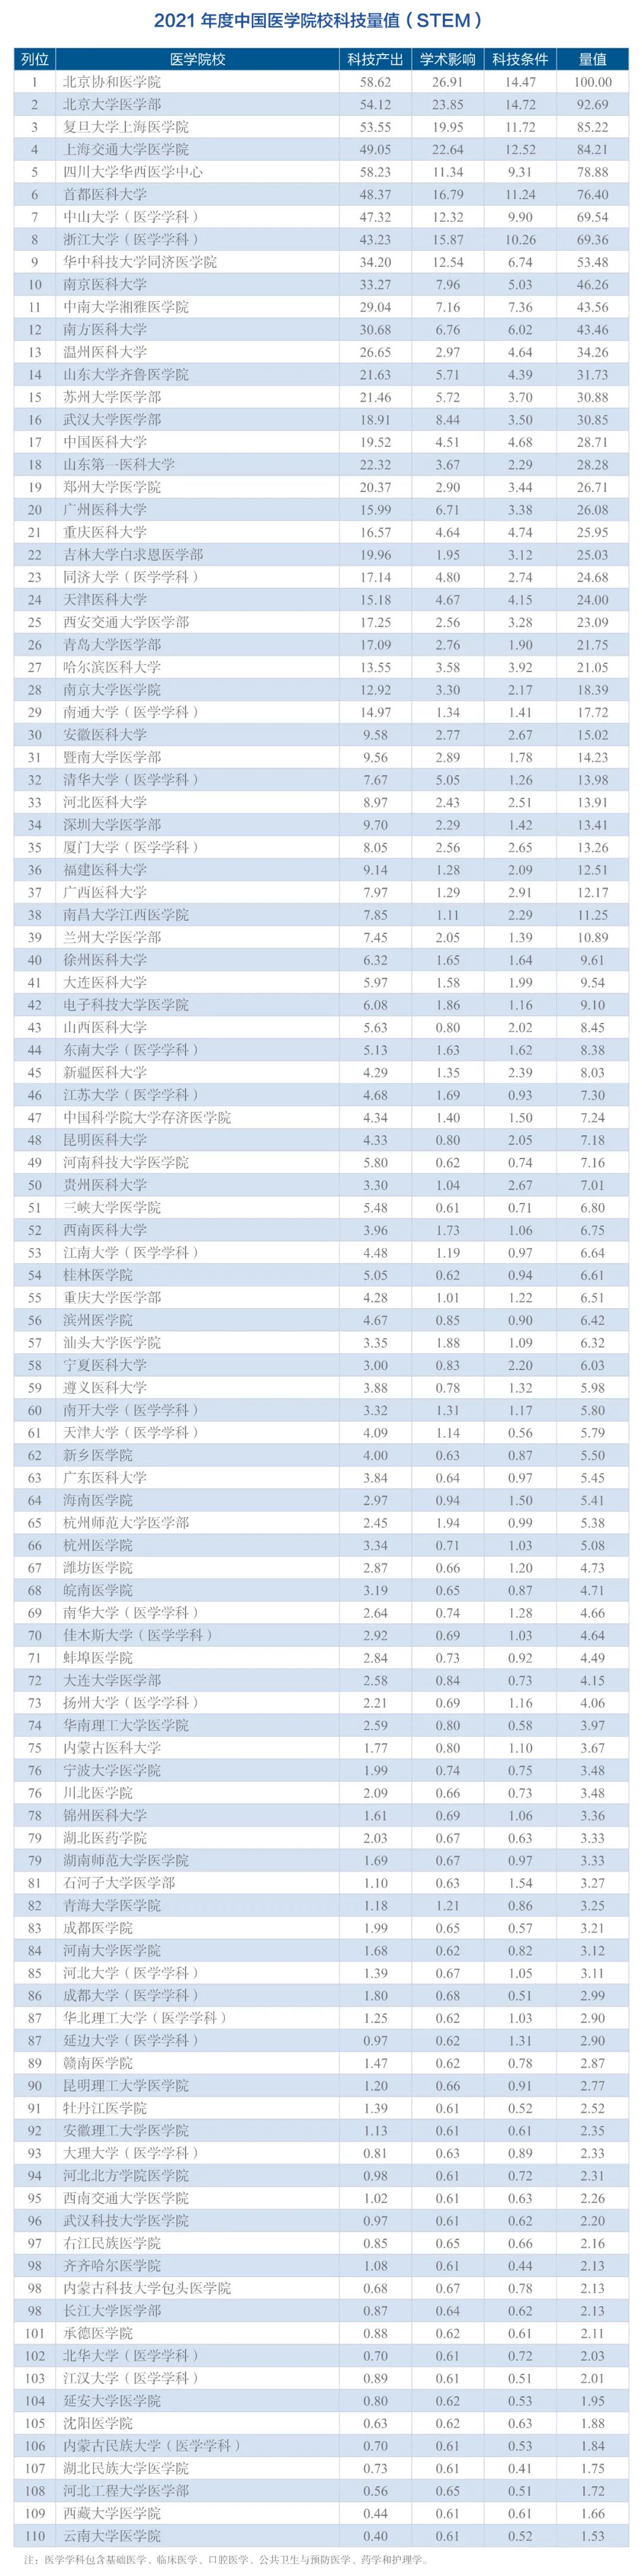 2021年度中国<font color="red">医学院校</font>/中国医院科技量值（STEM）